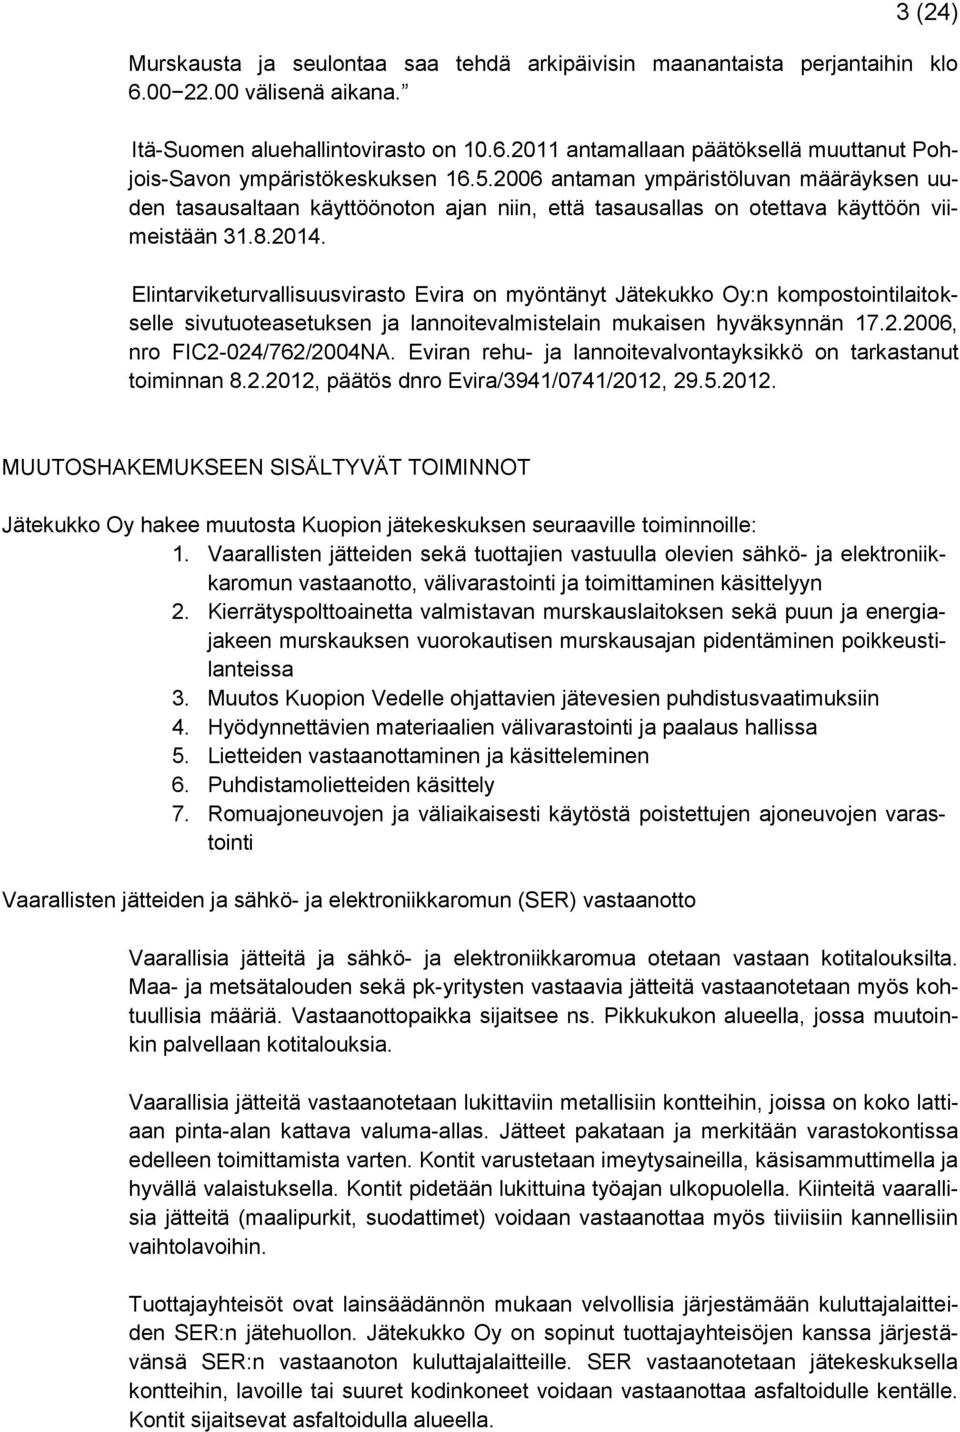 Elintarviketurvallisuusvirasto Evira on myöntänyt Jätekukko Oy:n kompostointilaitokselle sivutuoteasetuksen ja lannoitevalmistelain mukaisen hyväksynnän 17.2.2006, nro FIC2-024/762/2004NA.